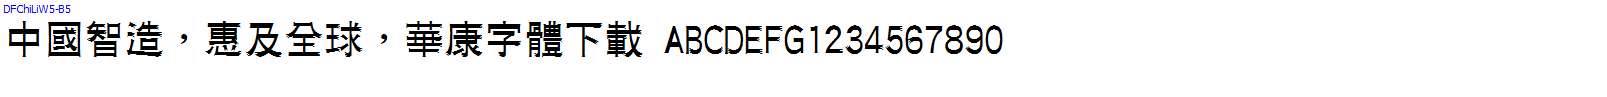 華康字體DFChiLiW5-B5.TTF